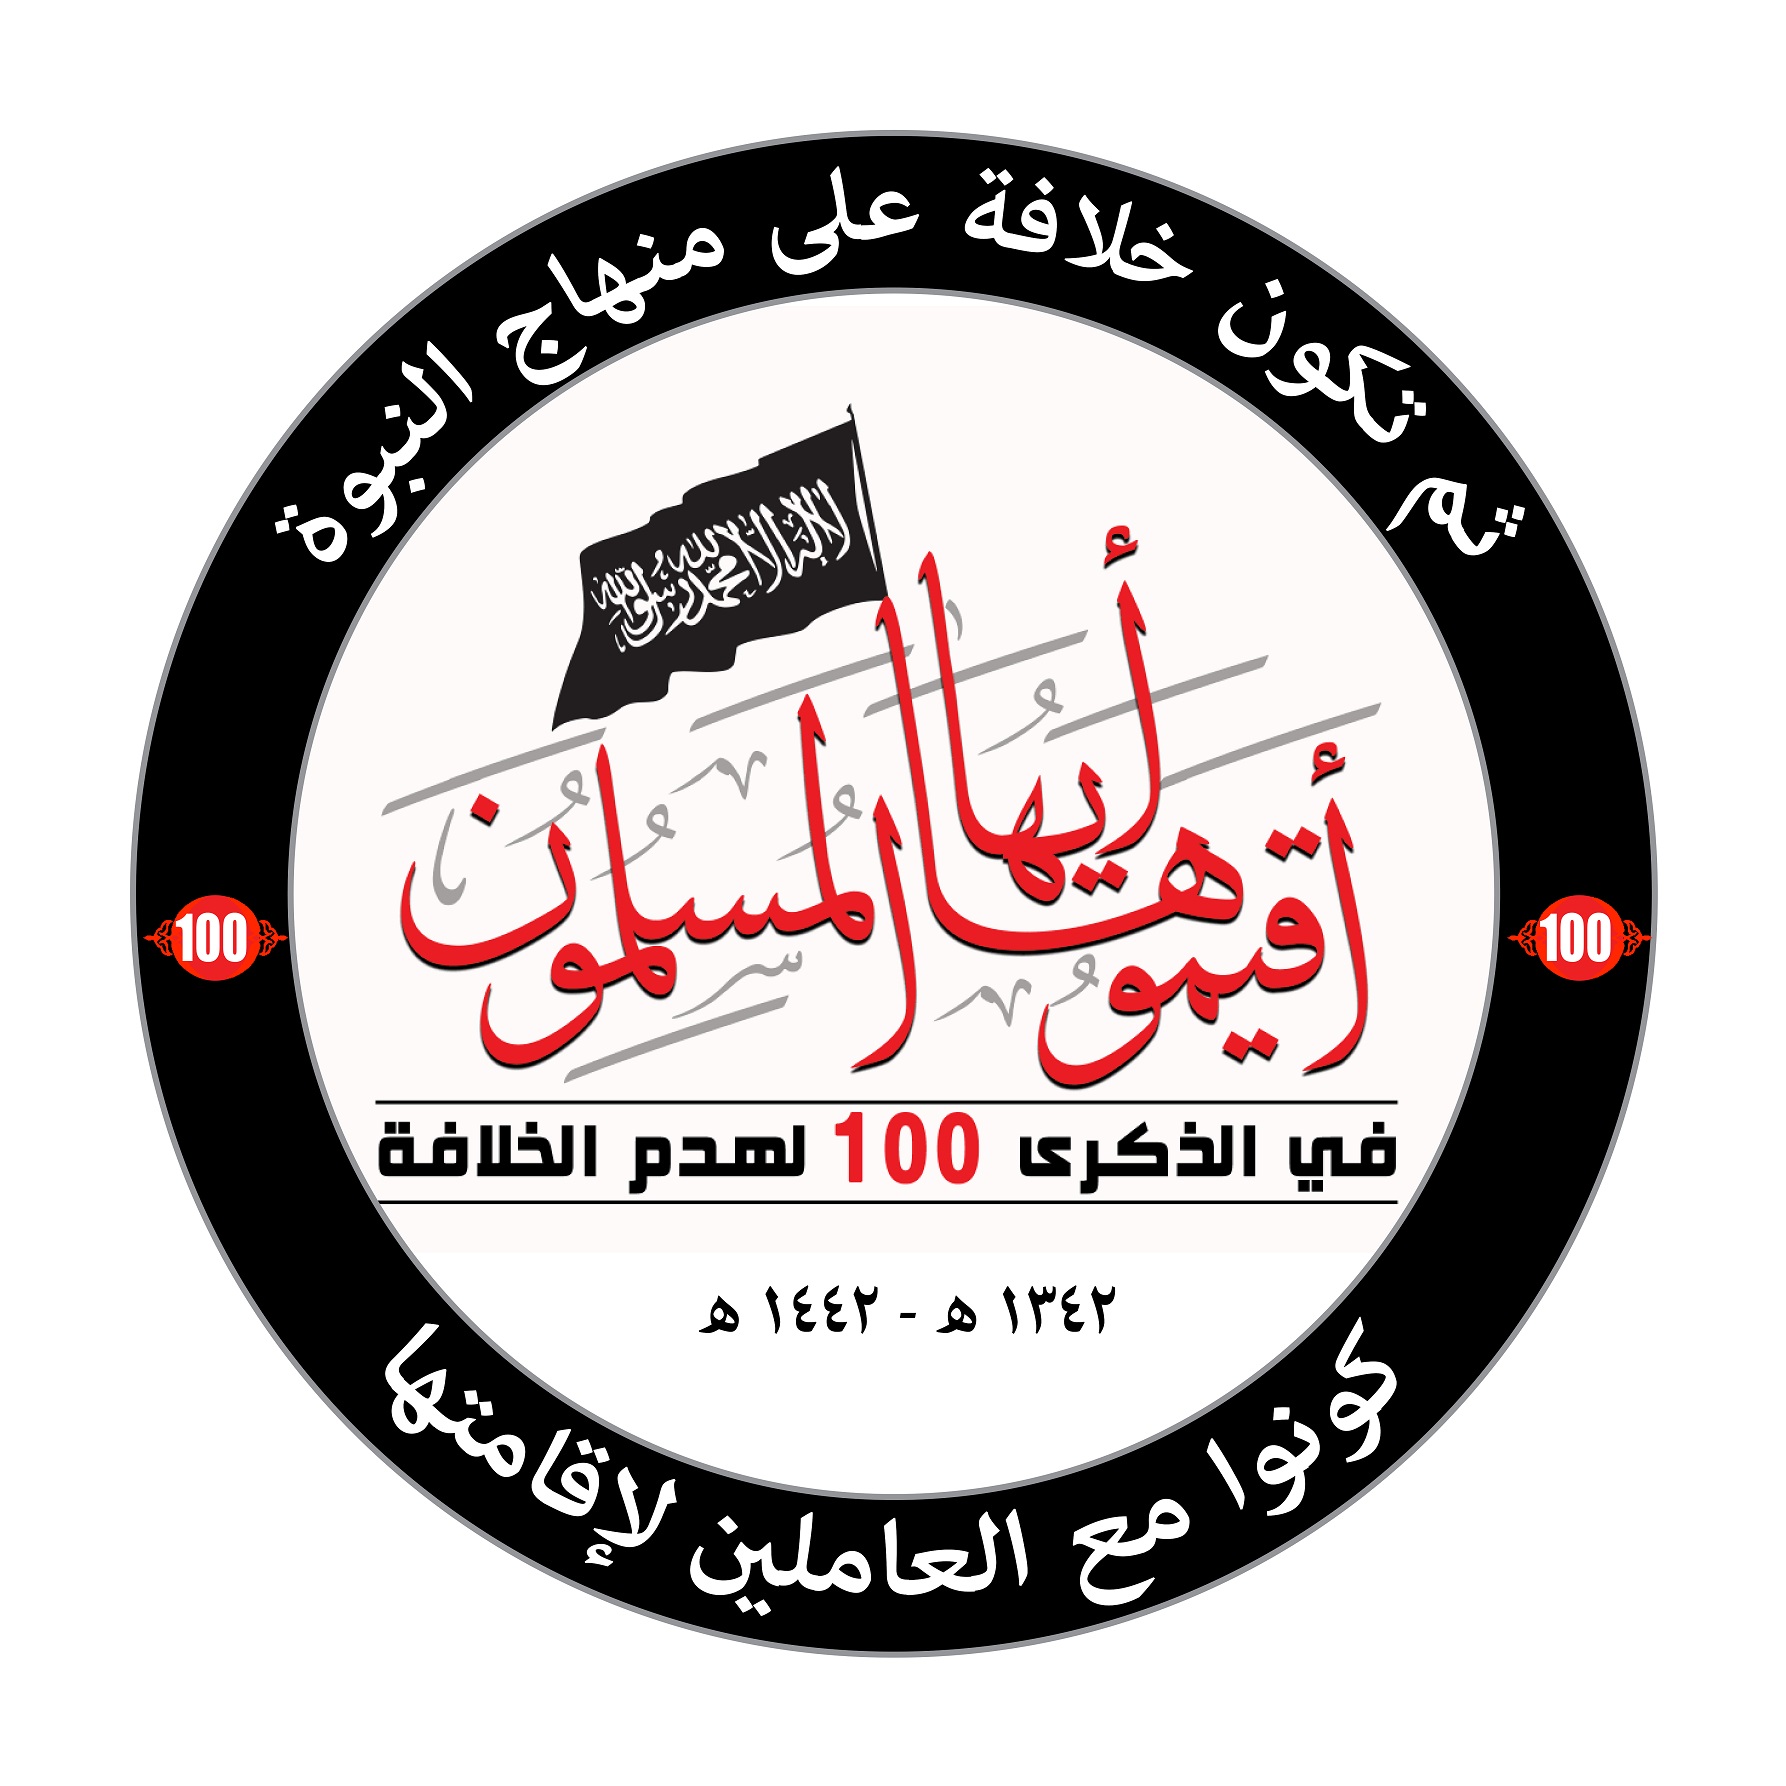  بيان صحفي: المكتب الإعلامي المركزي لحزب التحرير يطلق حملة بعنوان:"في الذكرى المئوية لهدم الخلافة... #أقيموها_أيها _المسلمون"